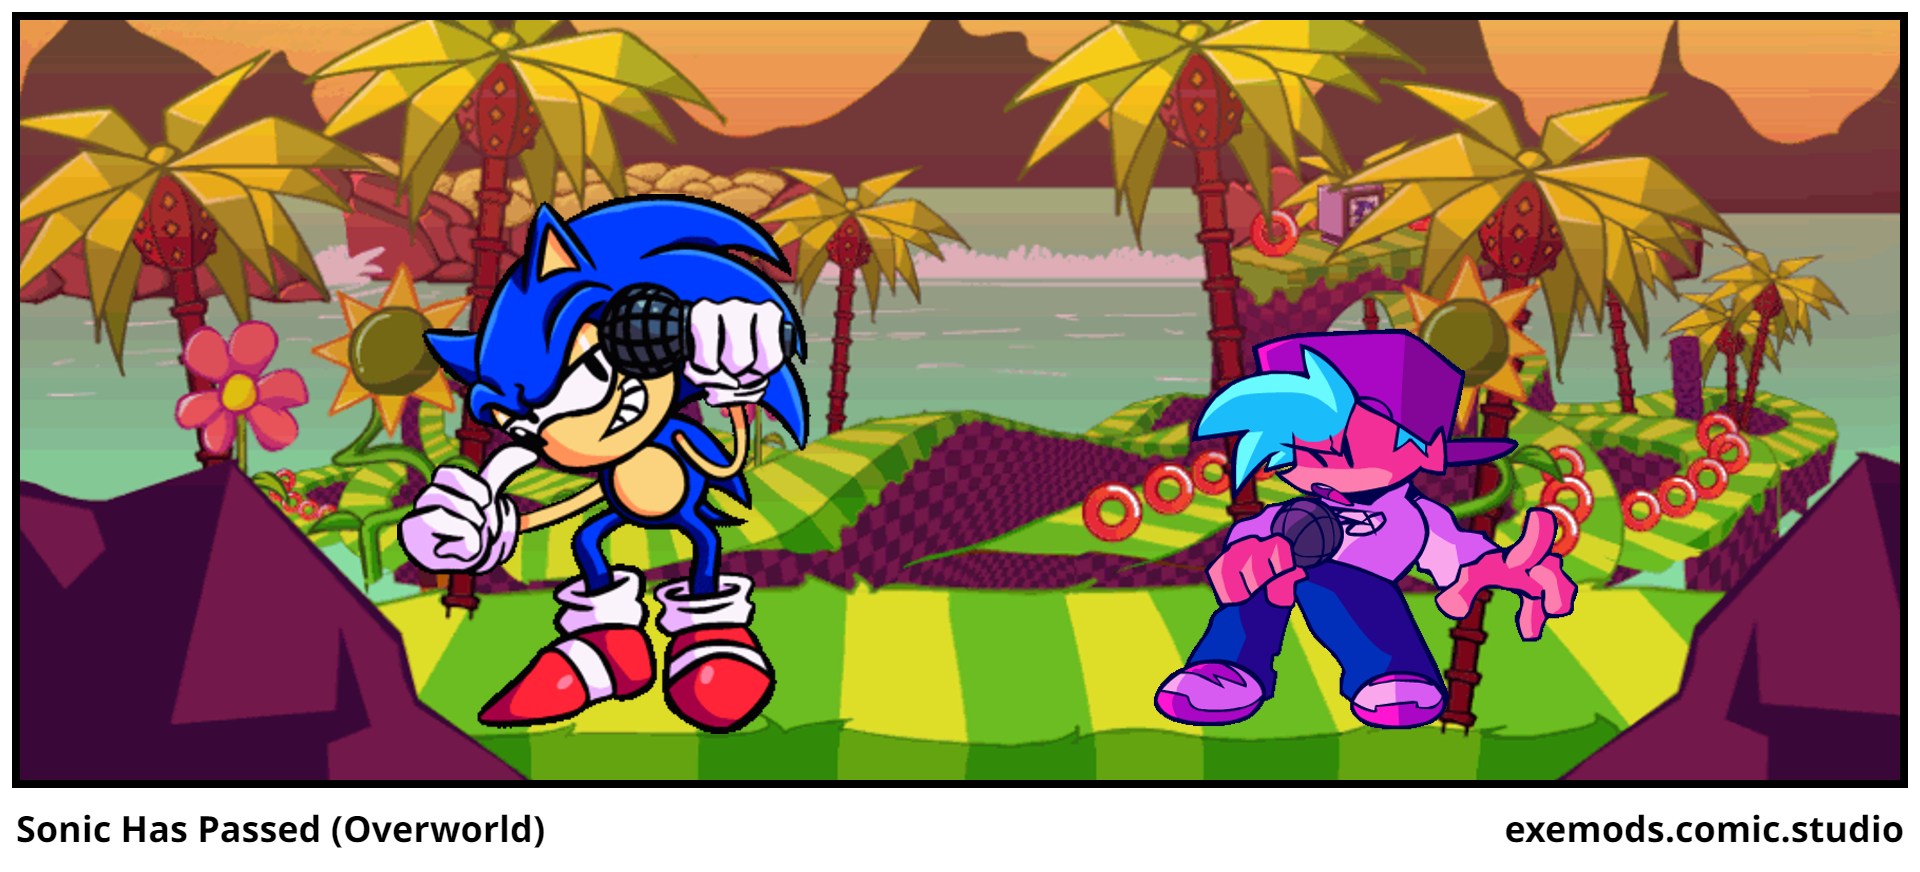 Sonic Has Passed (Overworld)